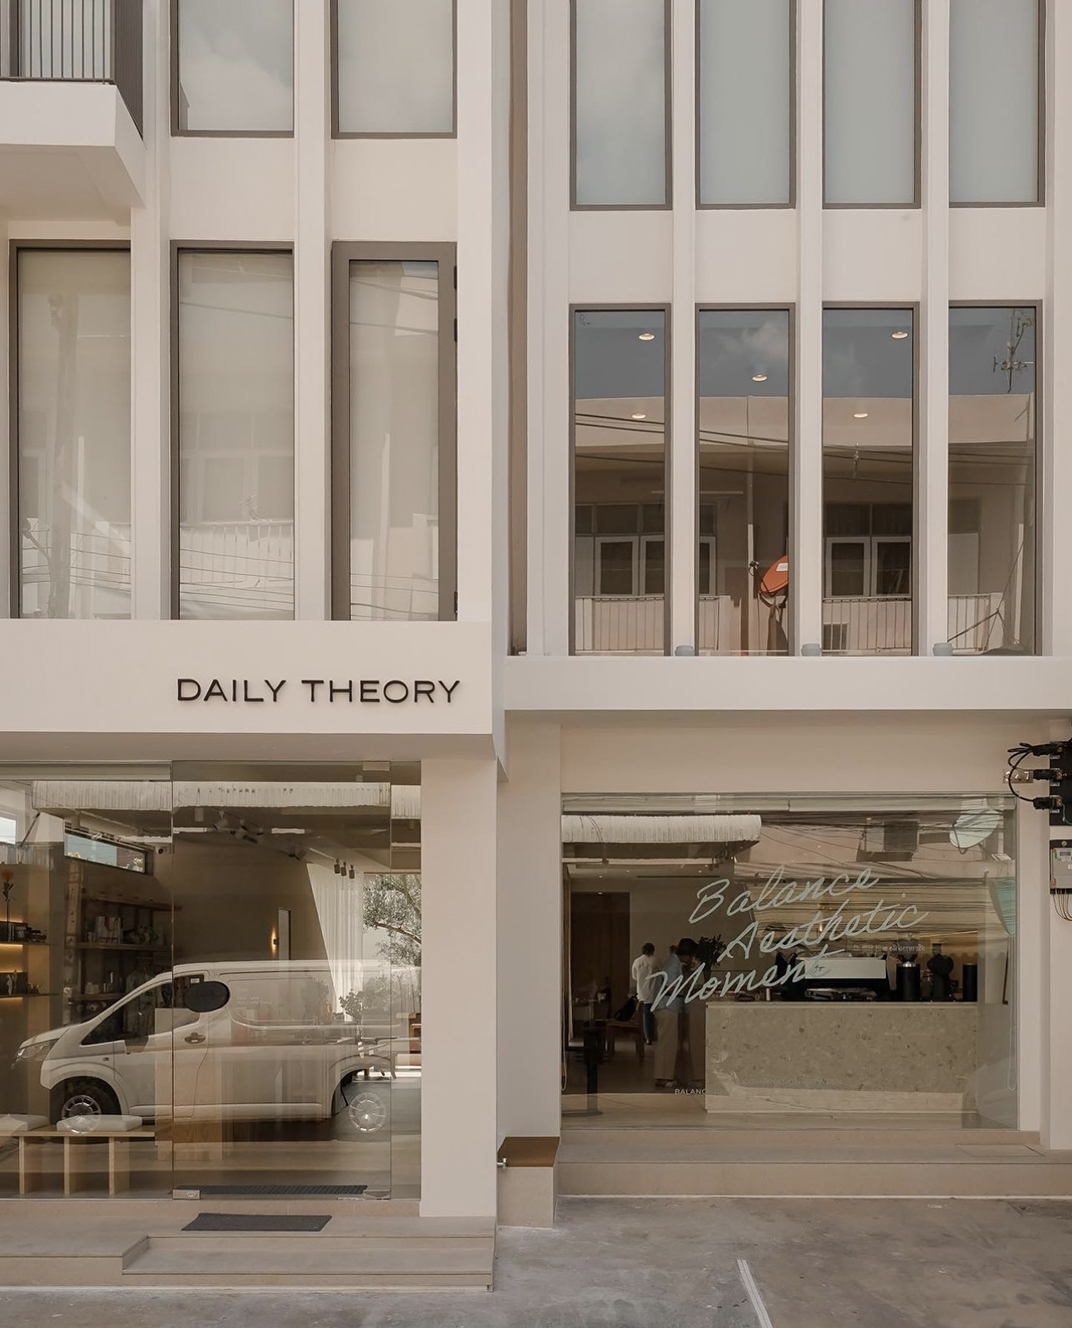 商店咖啡店Daily Theory 泰国 曼谷 北京 上海 珠海 广州 武汉 杭州 佛山 澳门 logo设计 vi设计 空间设计